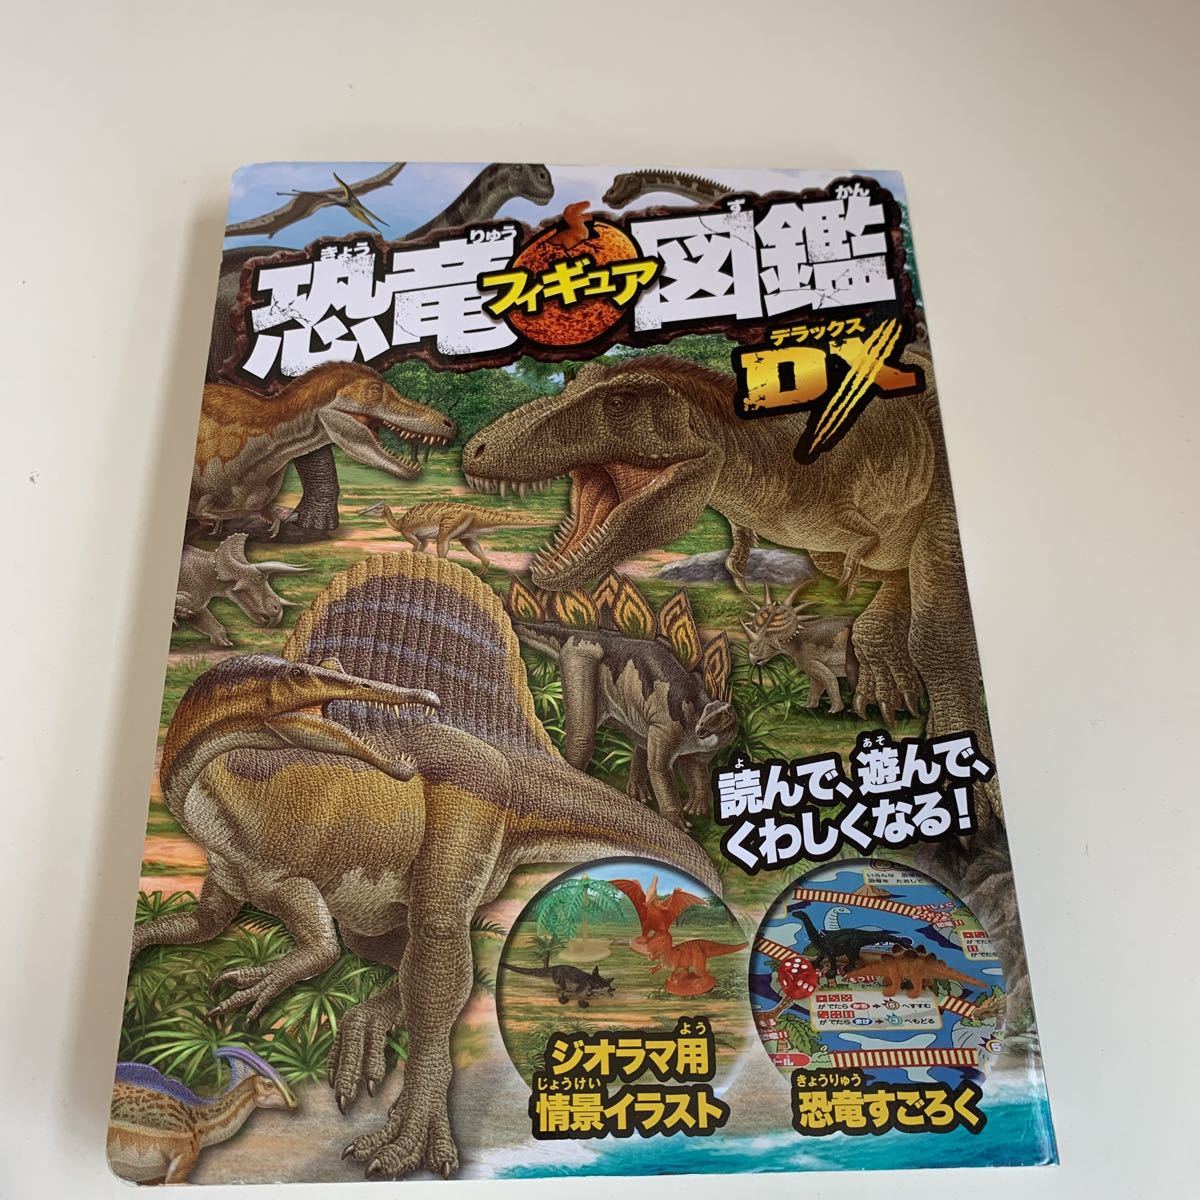 yk225 динозавр фигурка иллюстрированная книга DXtilanosauru ska malasaurus.. лед река период Sugoroku мясо еда животное книга с картинками детский книга с картинками учебная иллюстрированная книга ... книга с картинками 